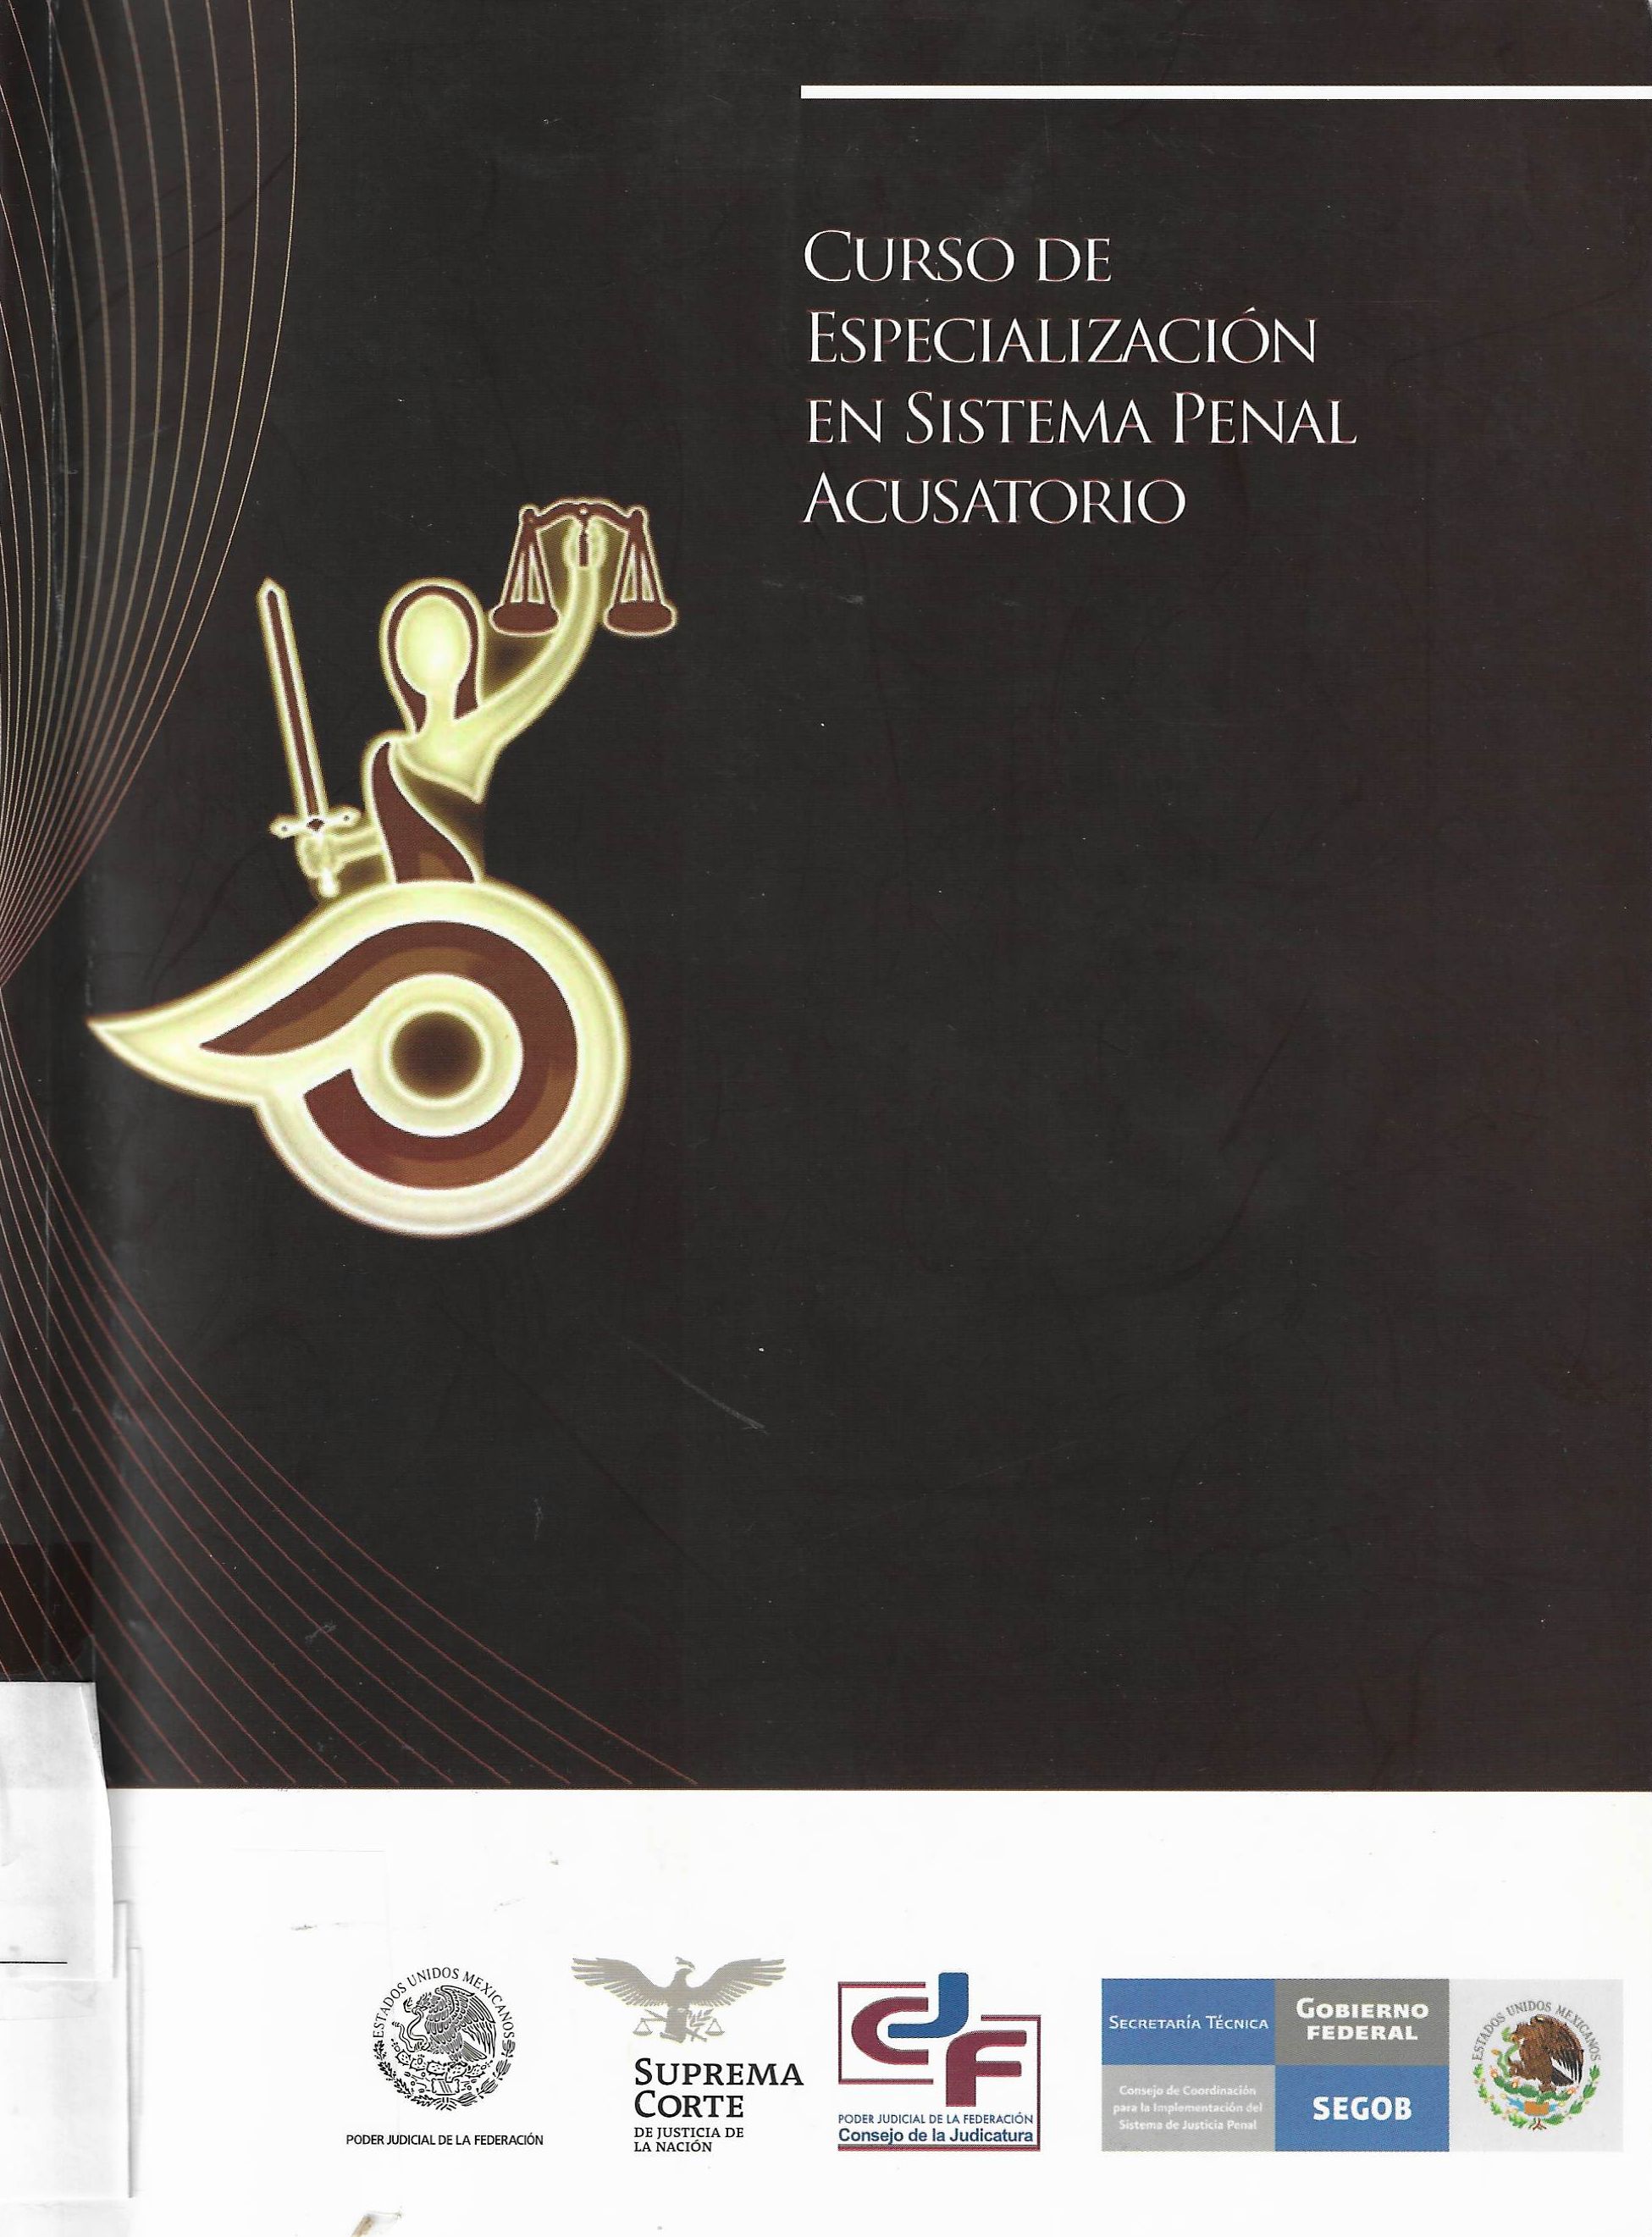 Imagen de portada del libro Curso de especializacion en sistema penal acusatorio